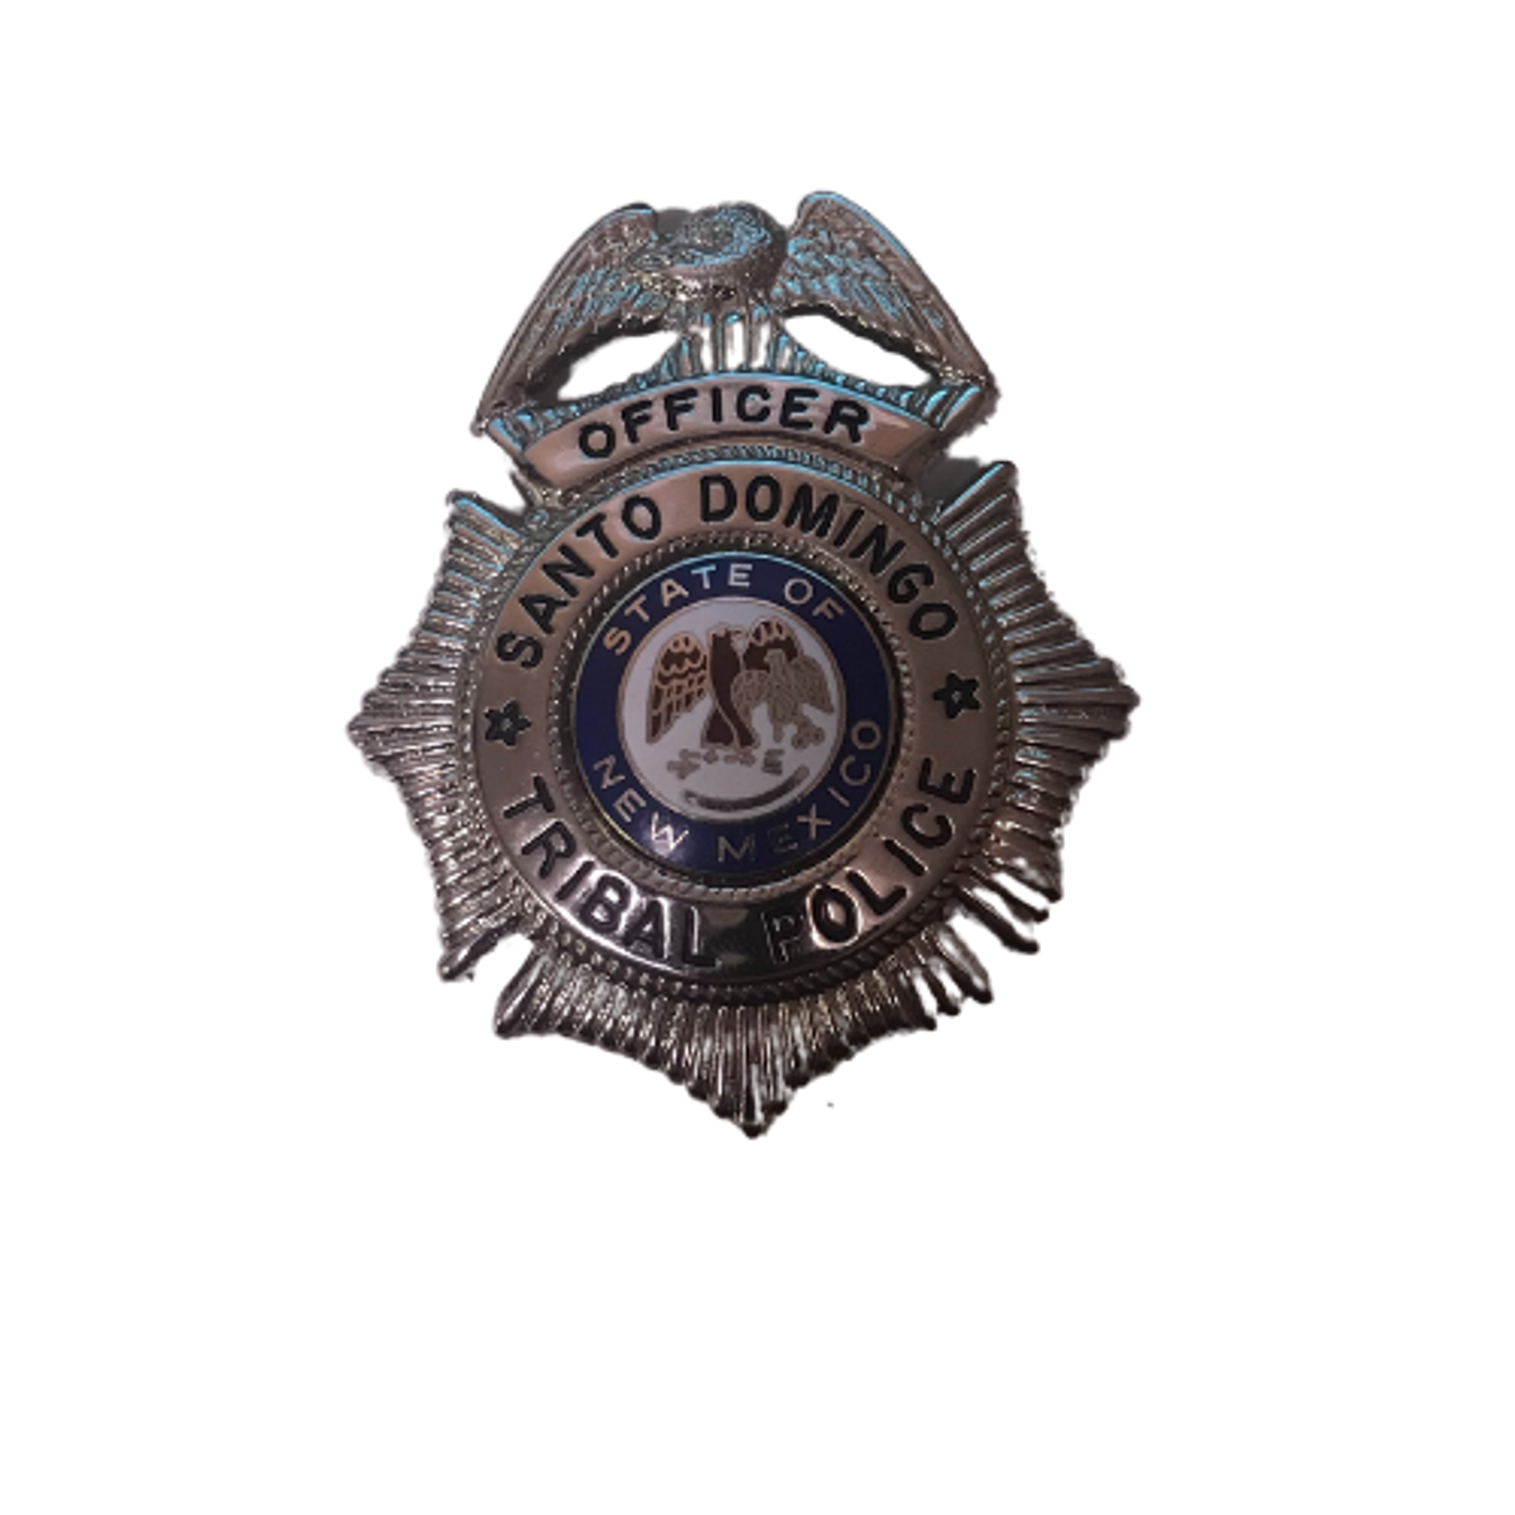 Santo Domingo Tribal Police Officer Badge